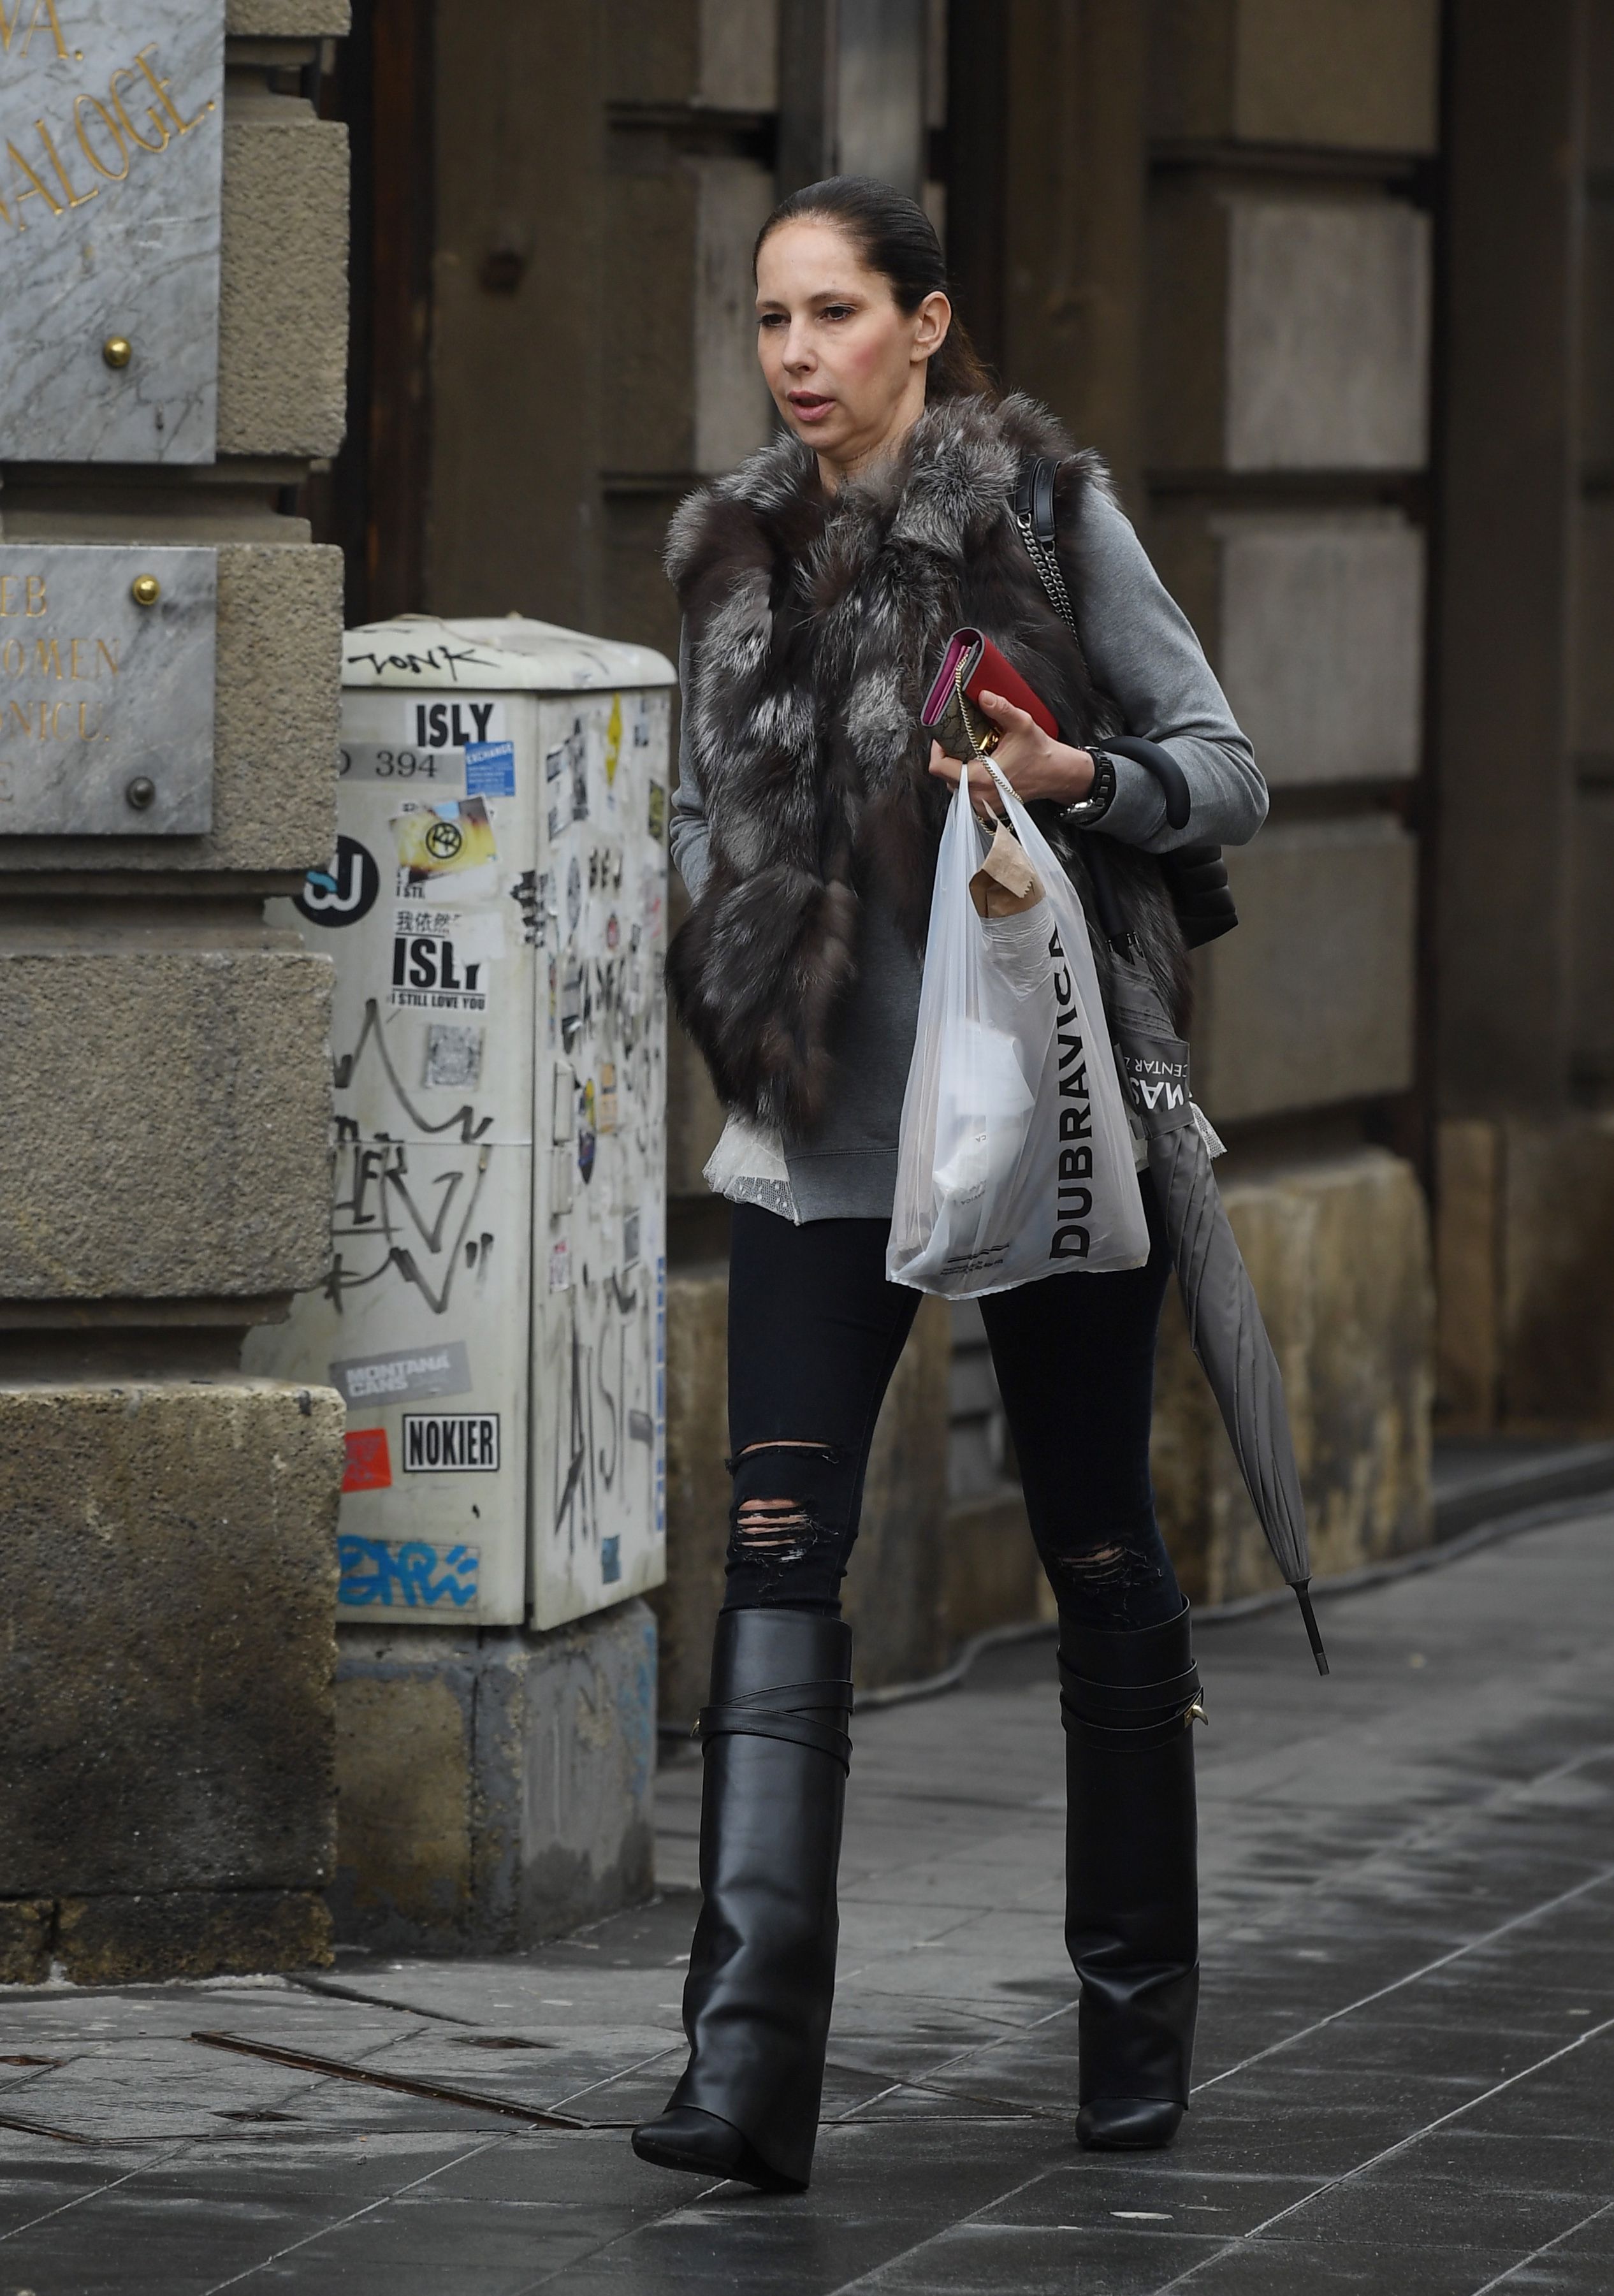 Ona i dalje nosi popularne i vrlo neobične Givenchy čizme do koljena